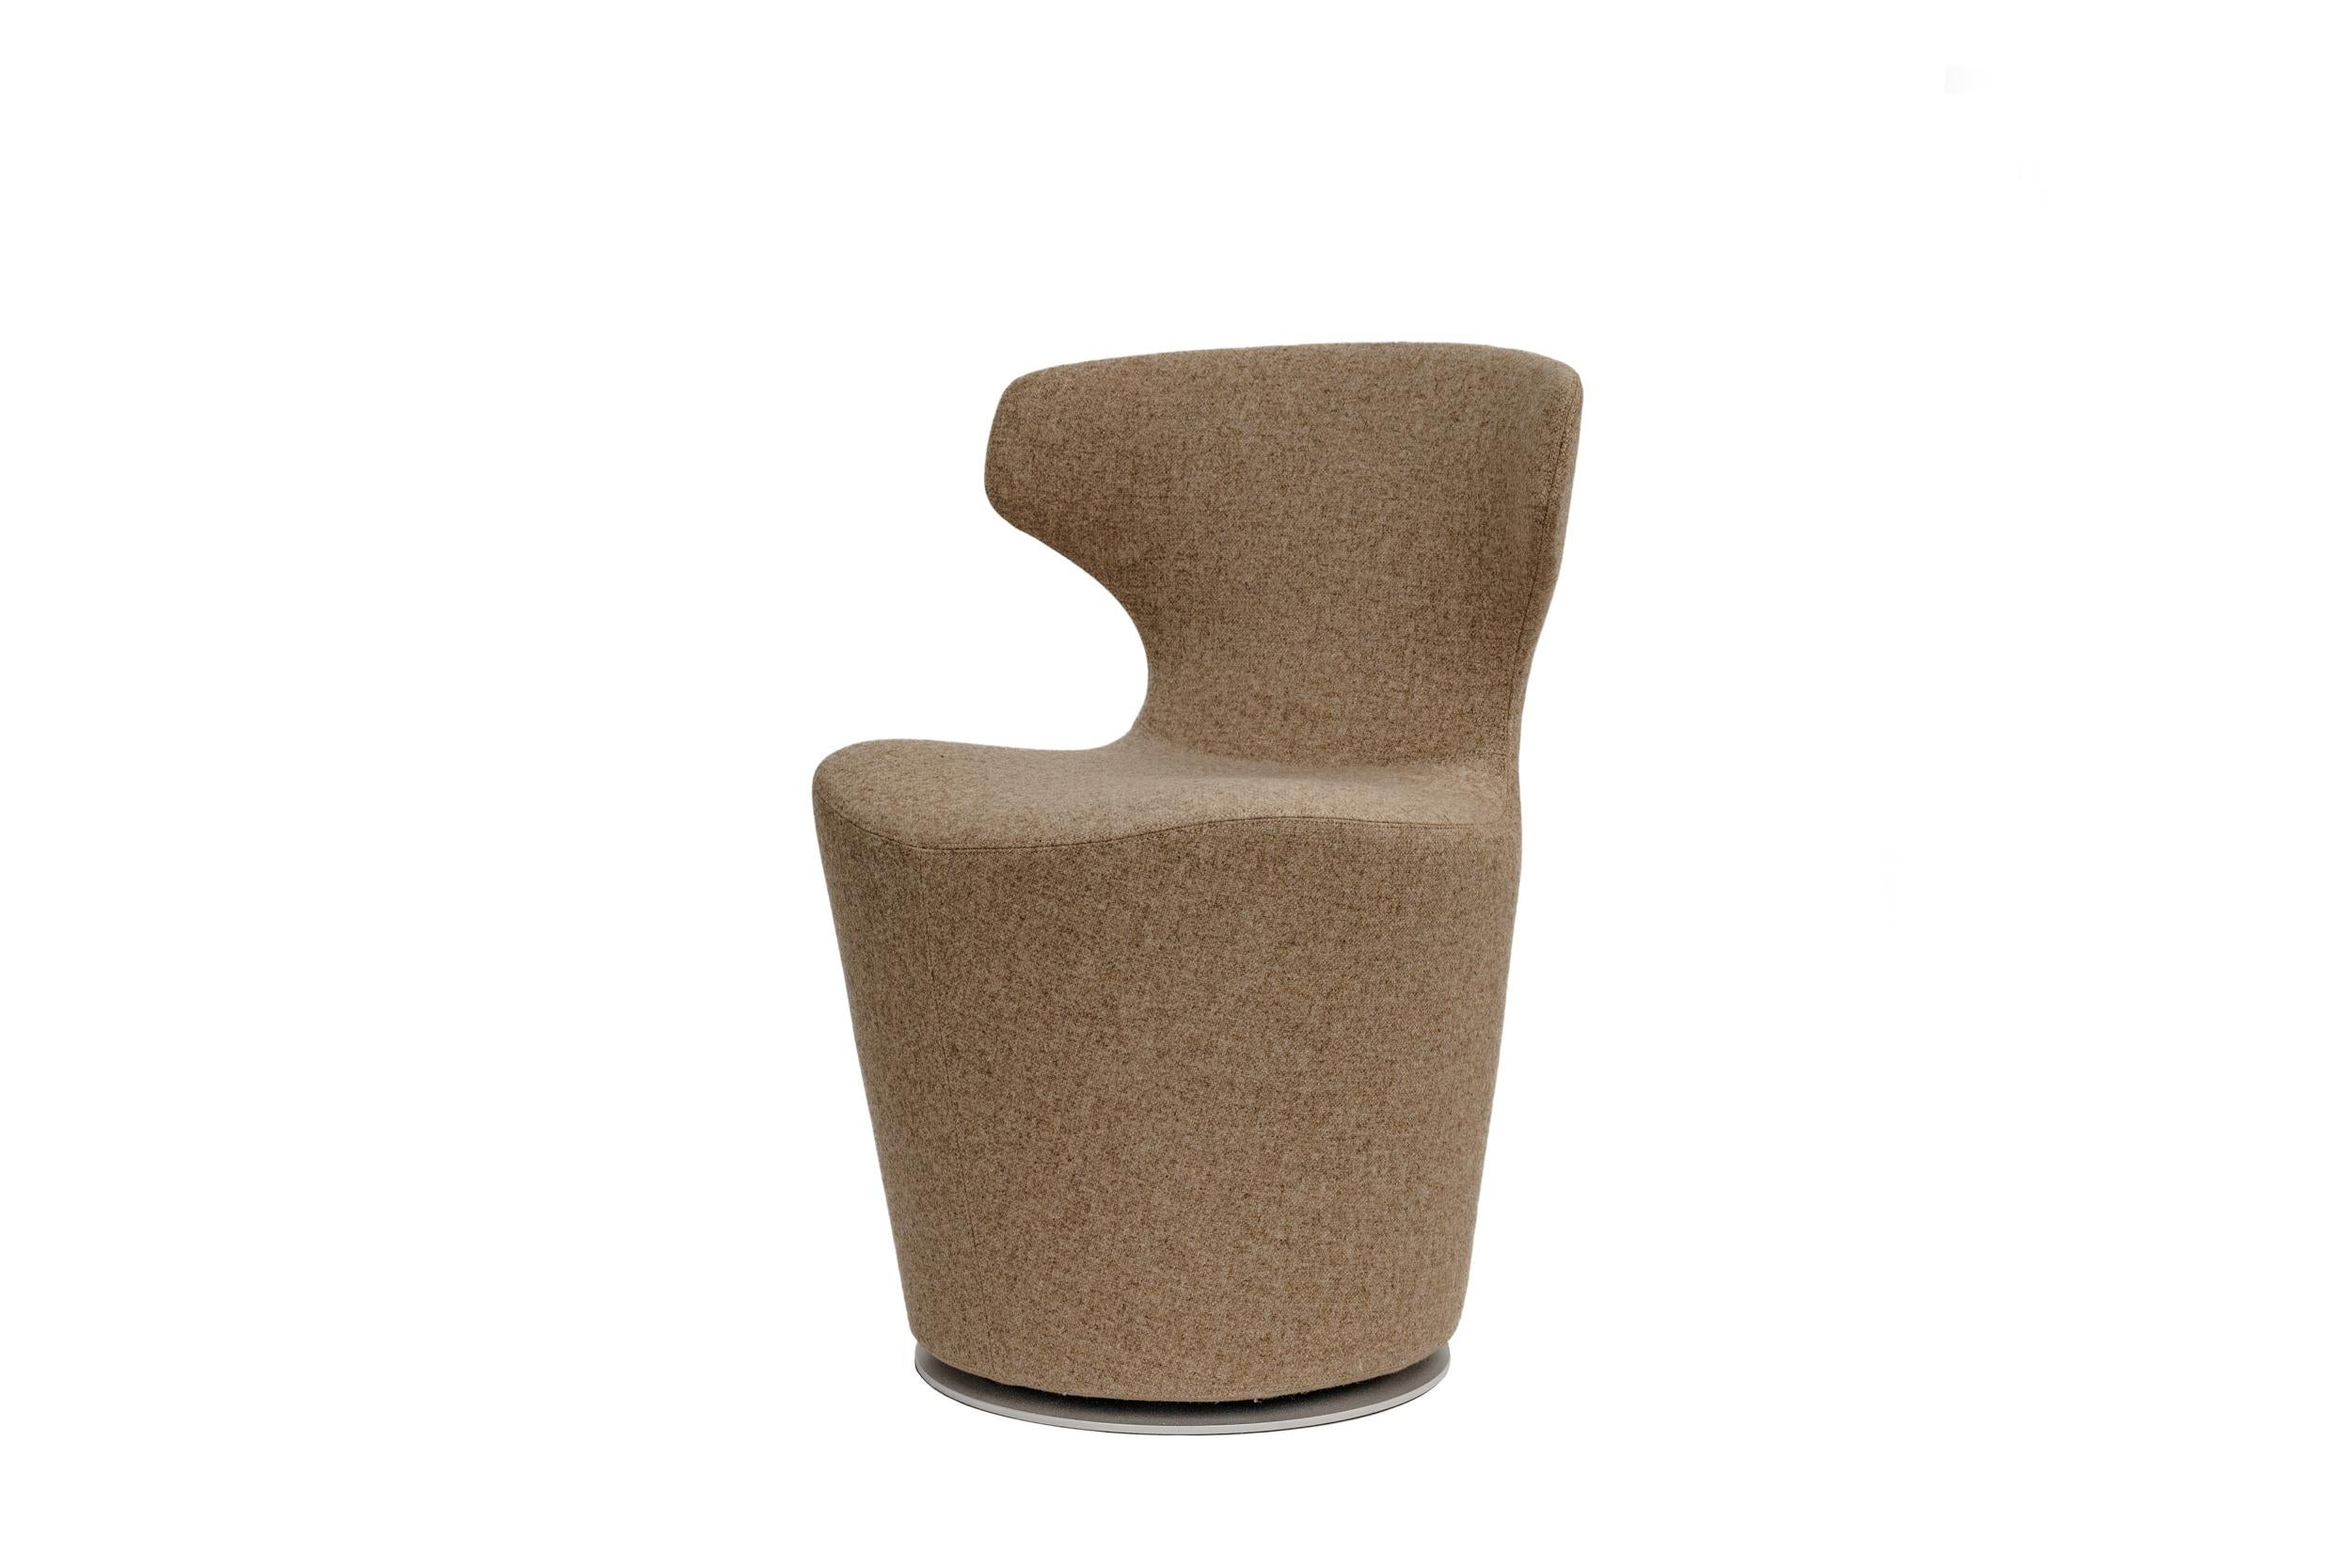 Der Mini Papilio Sessel von B&B Italia ist mit einer neutralen, warm-beigen Wollmischung bezogen und hat einen Reißverschluss an der Rückseite. Dieser Sessel eignet sich sowohl für Wohnräume als auch für öffentliche Räume oder Unternehmen. Er